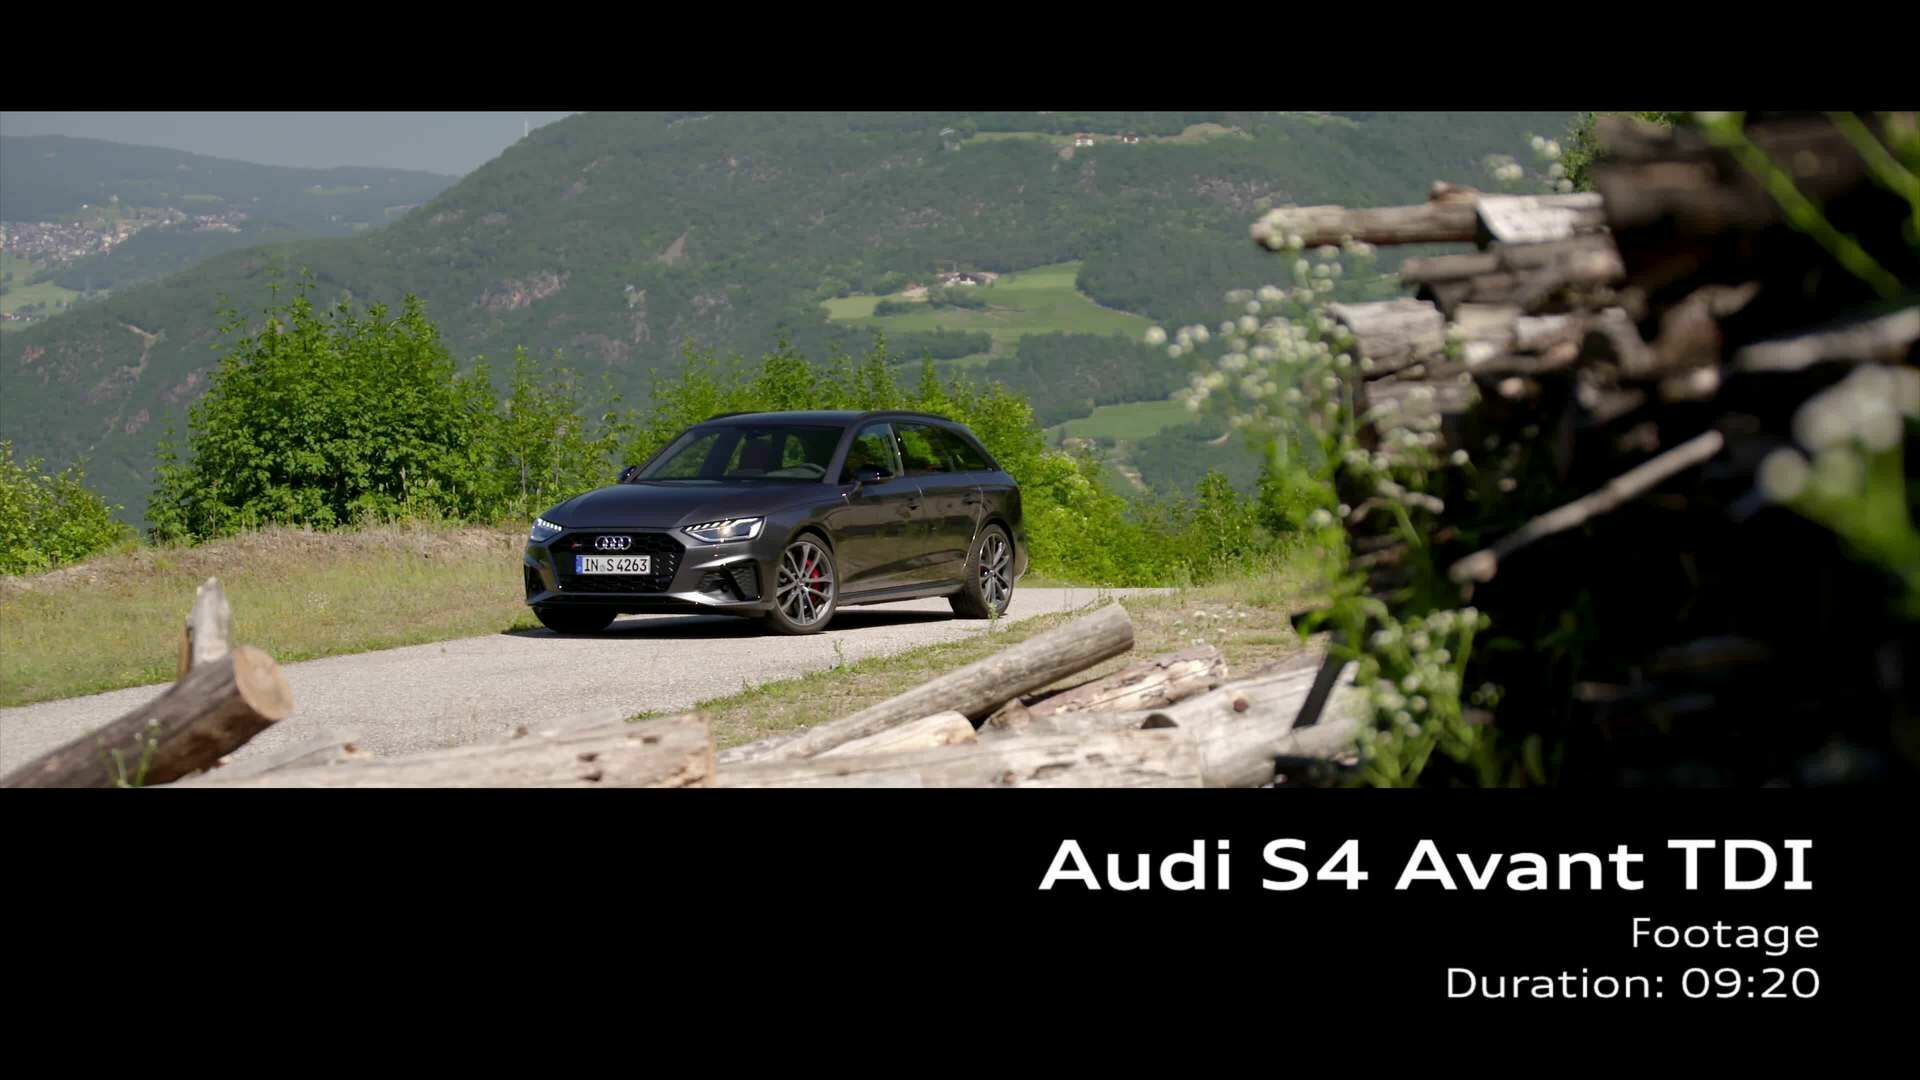 Audi S4 Avant TDI Footage Daytonagrau (Footage)